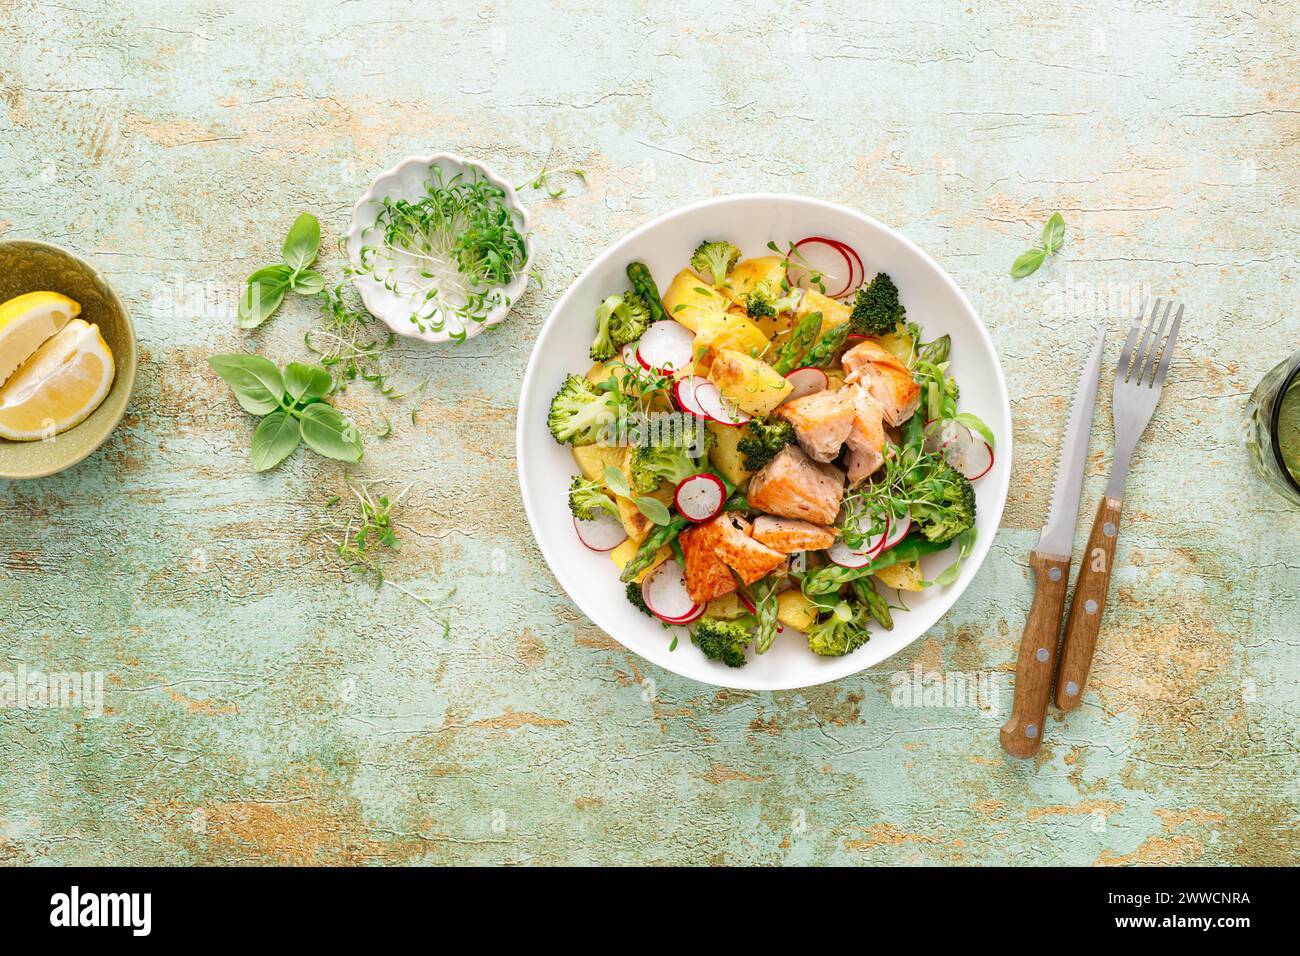 Salmon and potato salad with asparagus, broccoli and radish, top view Stock Photo